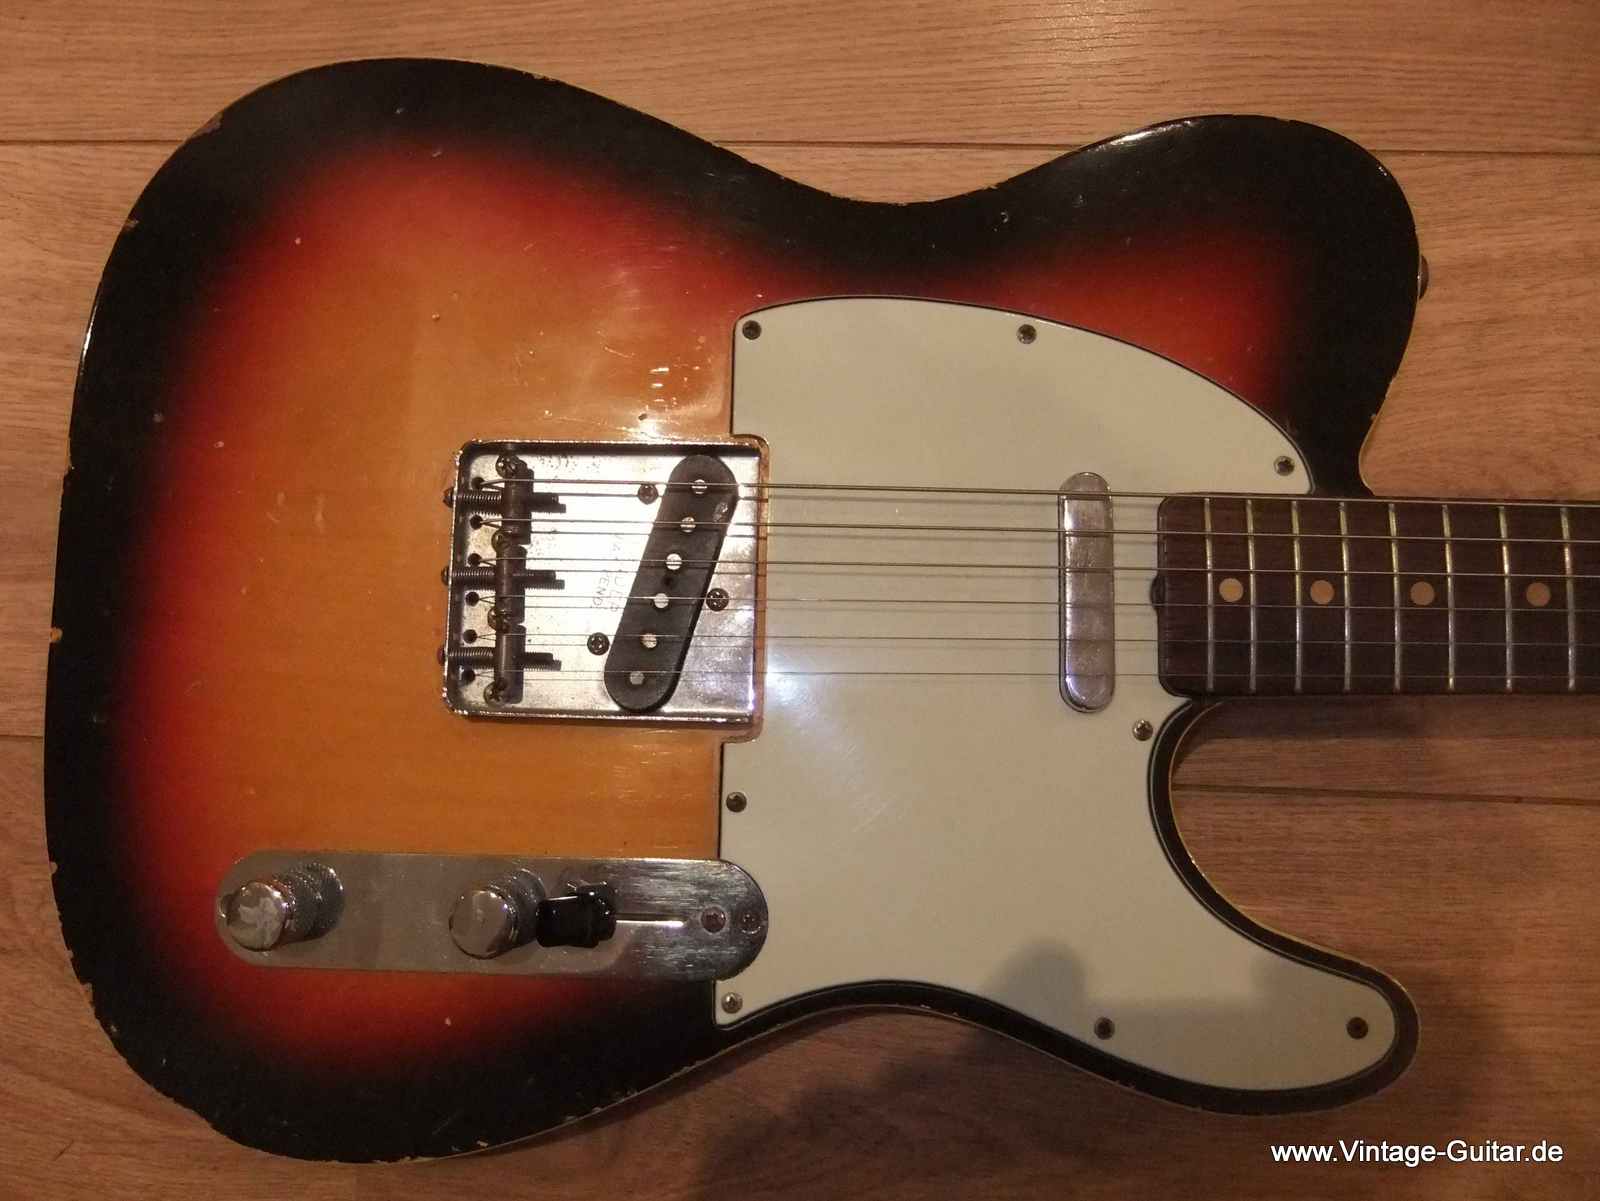 Telecaster_Fender-Custom-brown-case-sunburst-1962-002.jpg